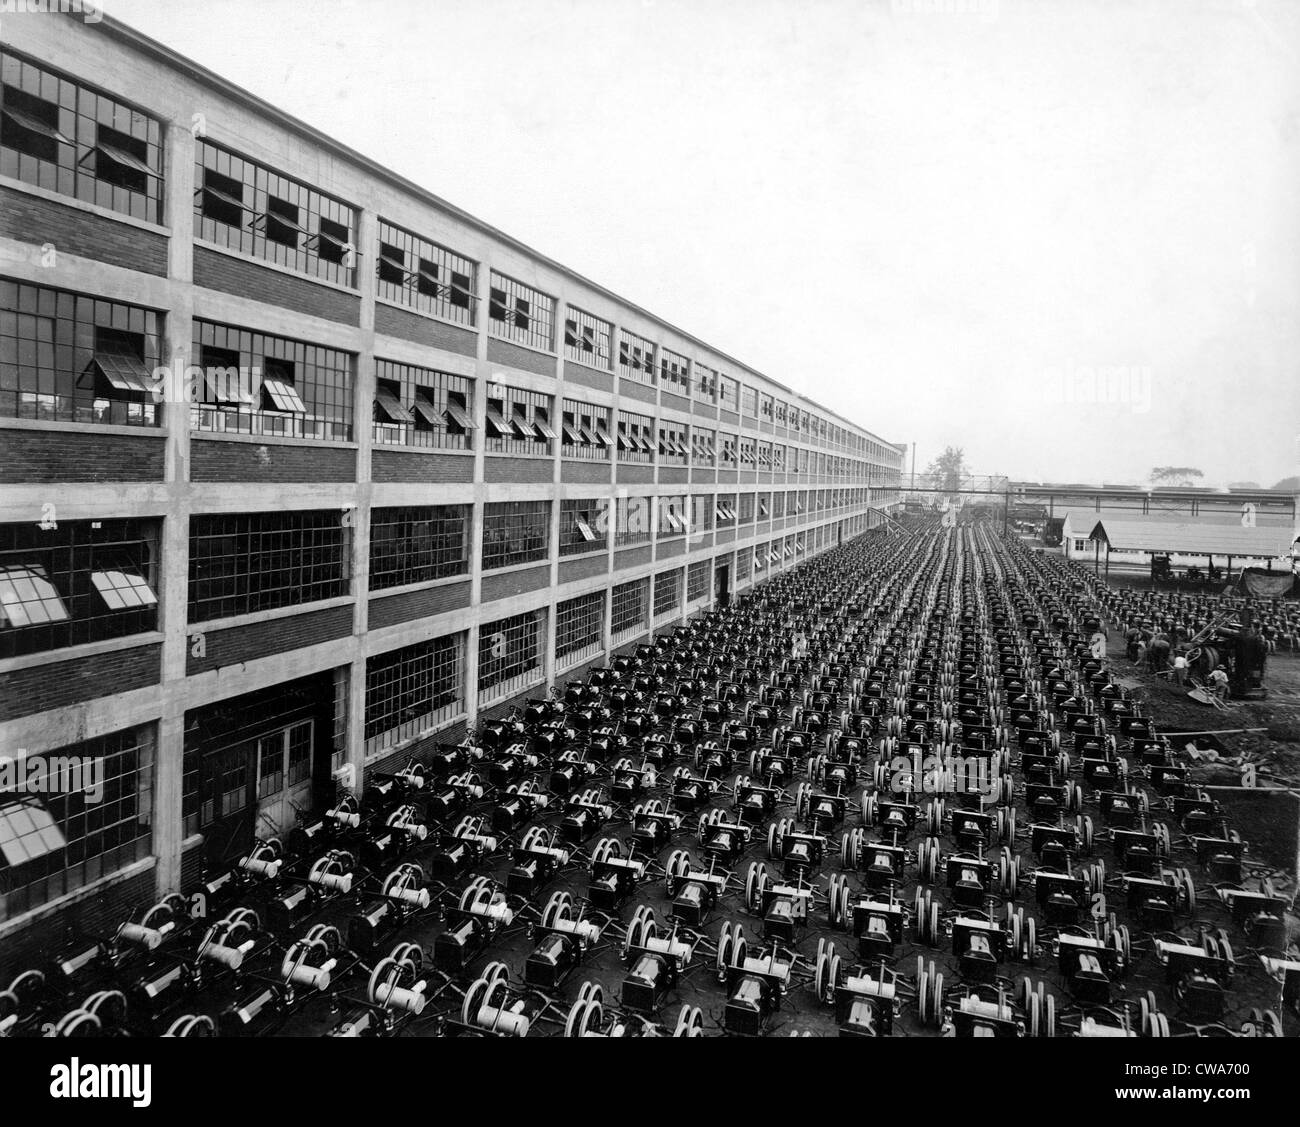 FORD MOTOR CO.- Highland Park impianto.. La cortesia: CSU Archivi / Everett Collection Foto Stock